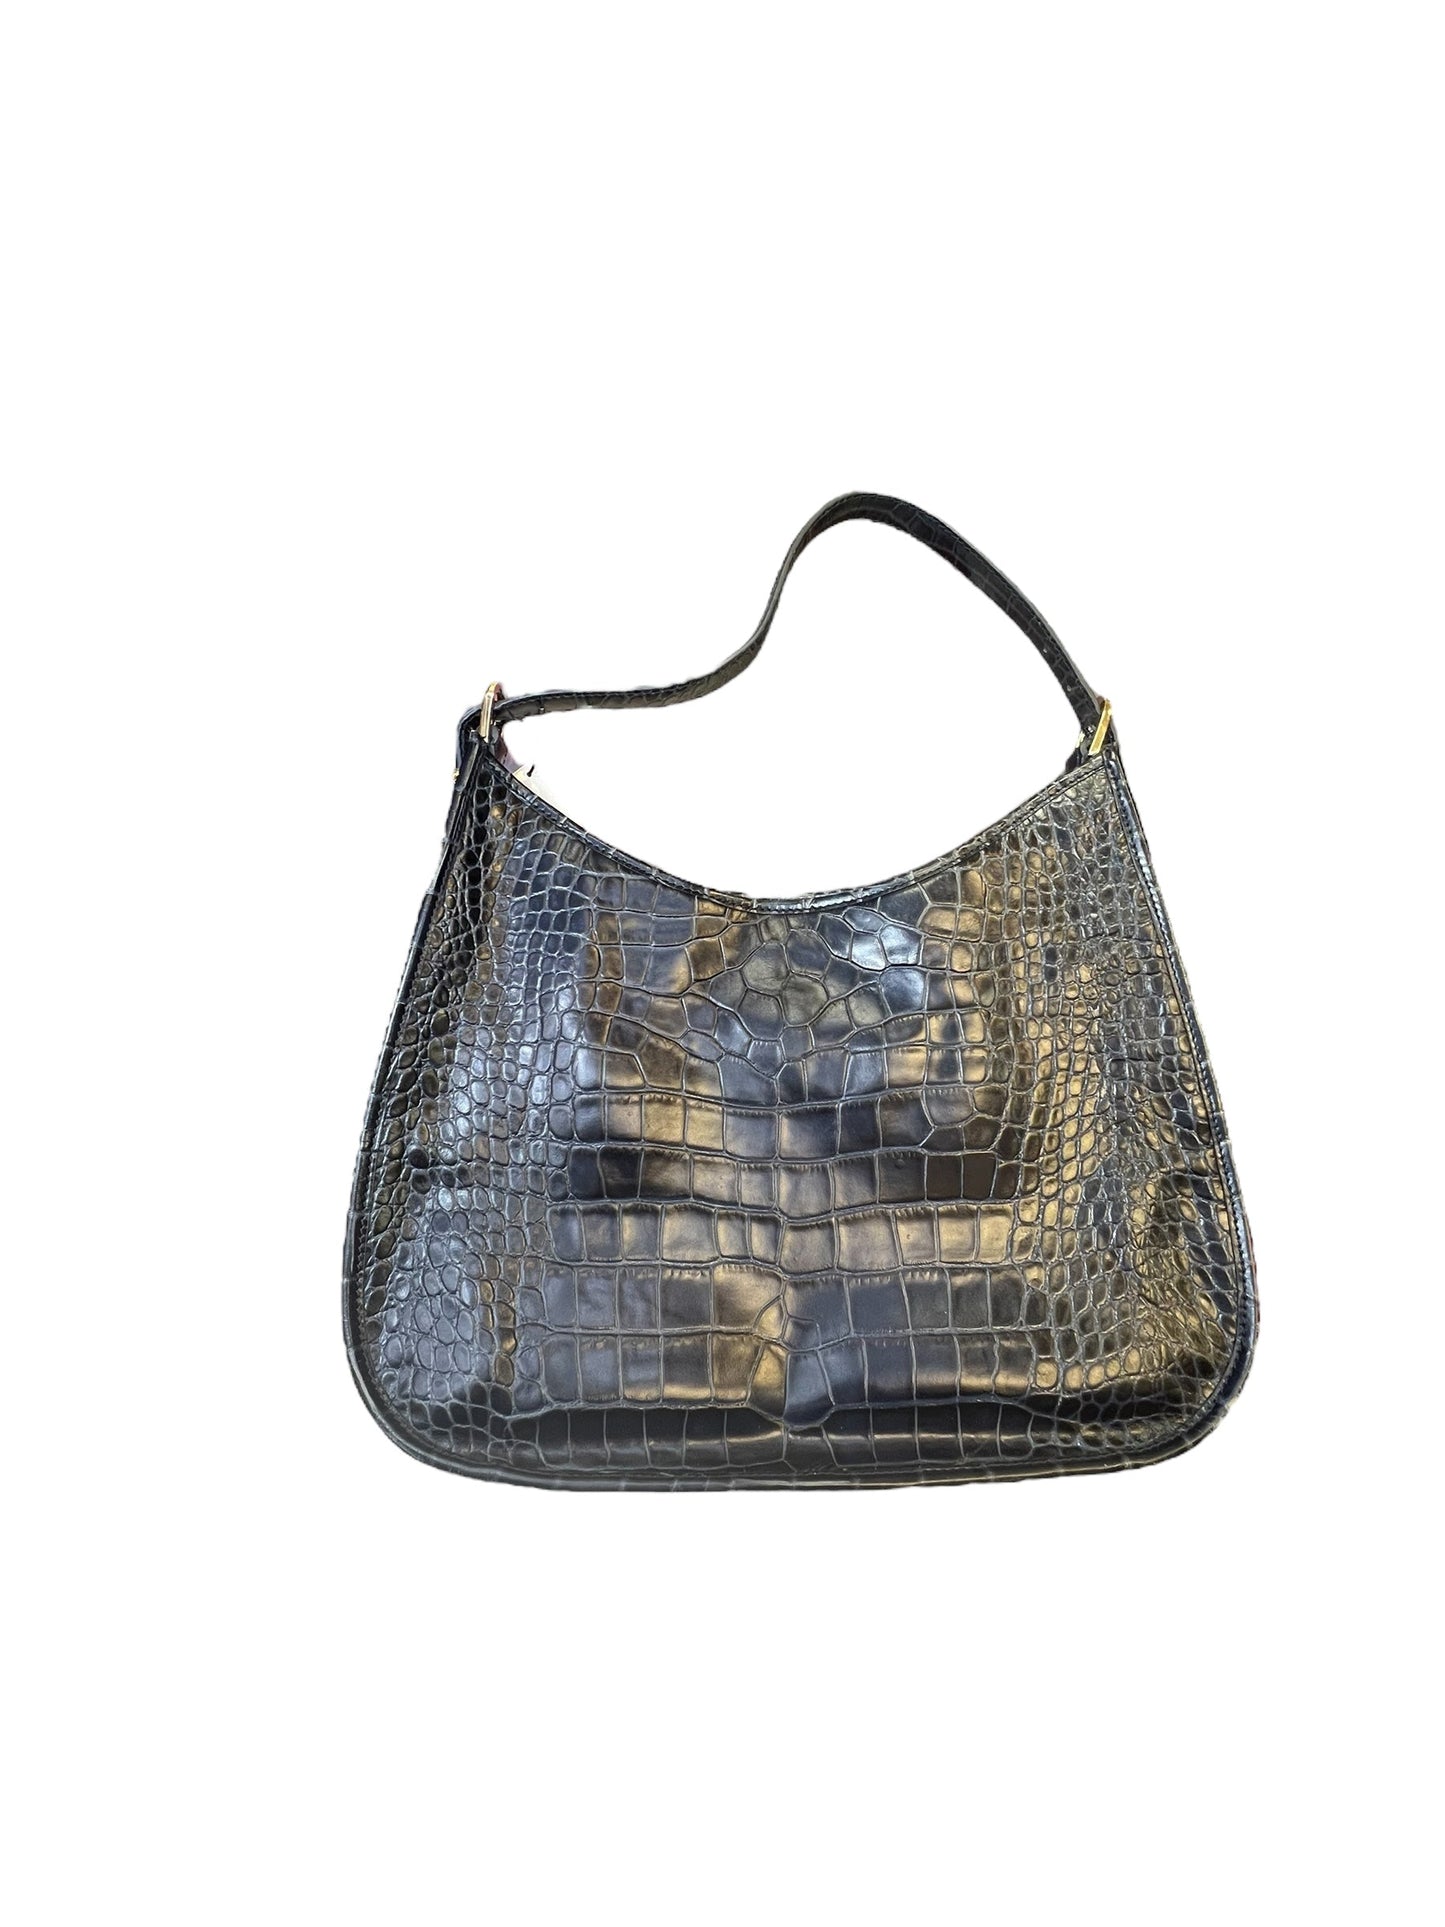 Handbag Luxury Designer By Cma  Size: Large